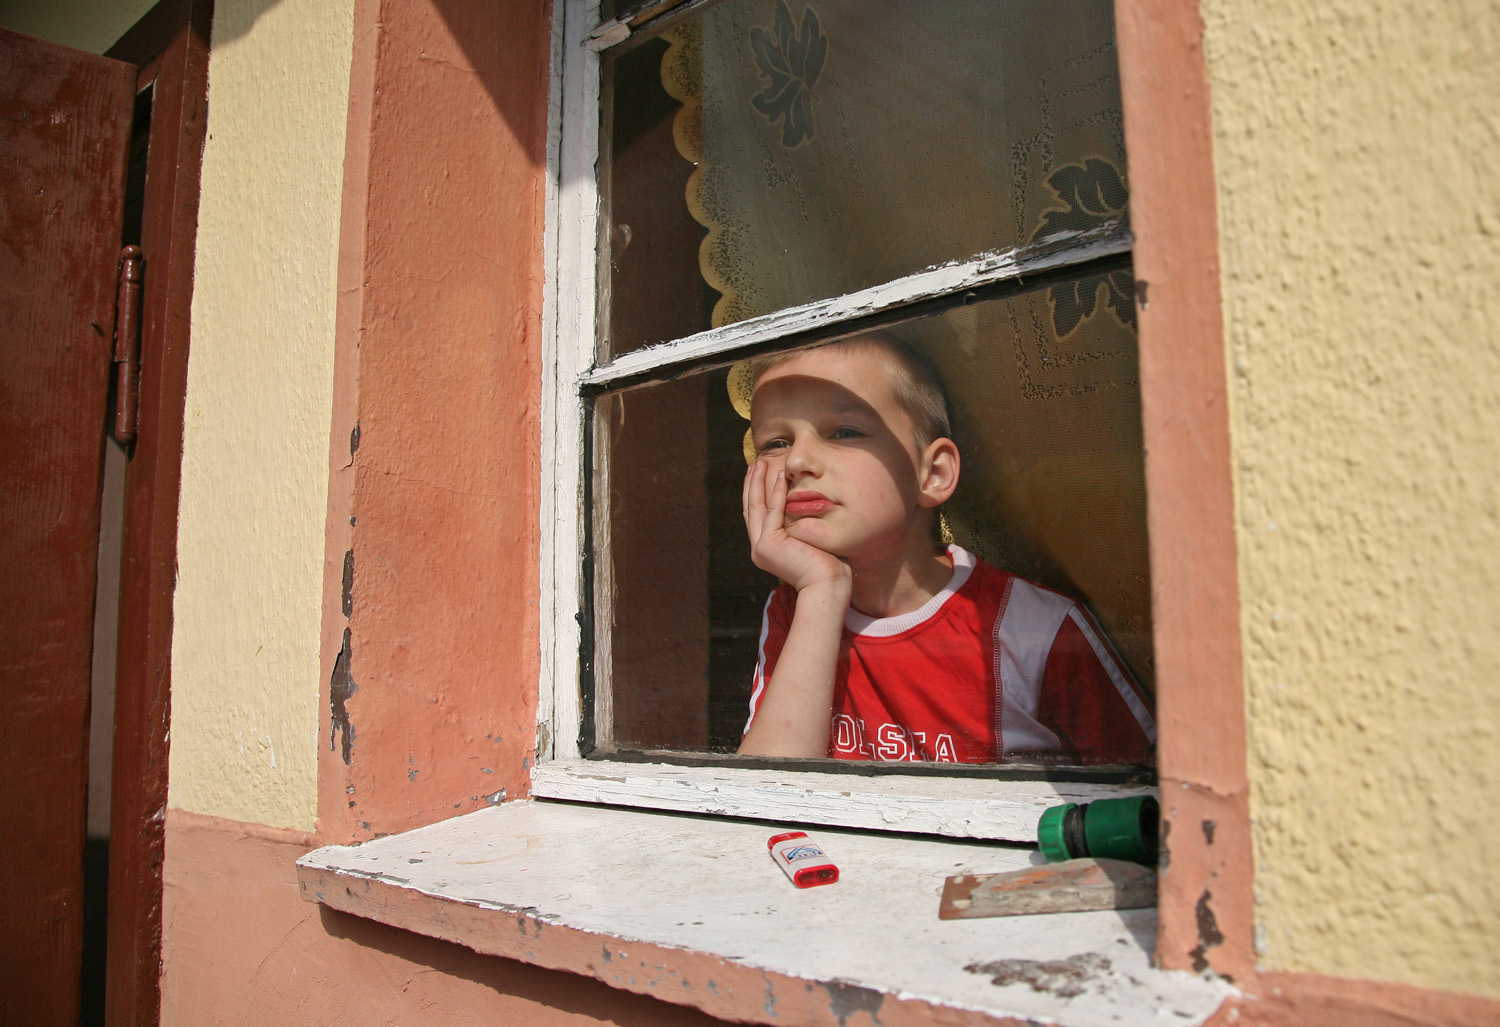 In Szymons Kinderzimmerregalen stapeln sich Spielautos. Sein Vater ist selten zu Hause, da er im Ausland arbeitet. / Markus Nowak, n-ost